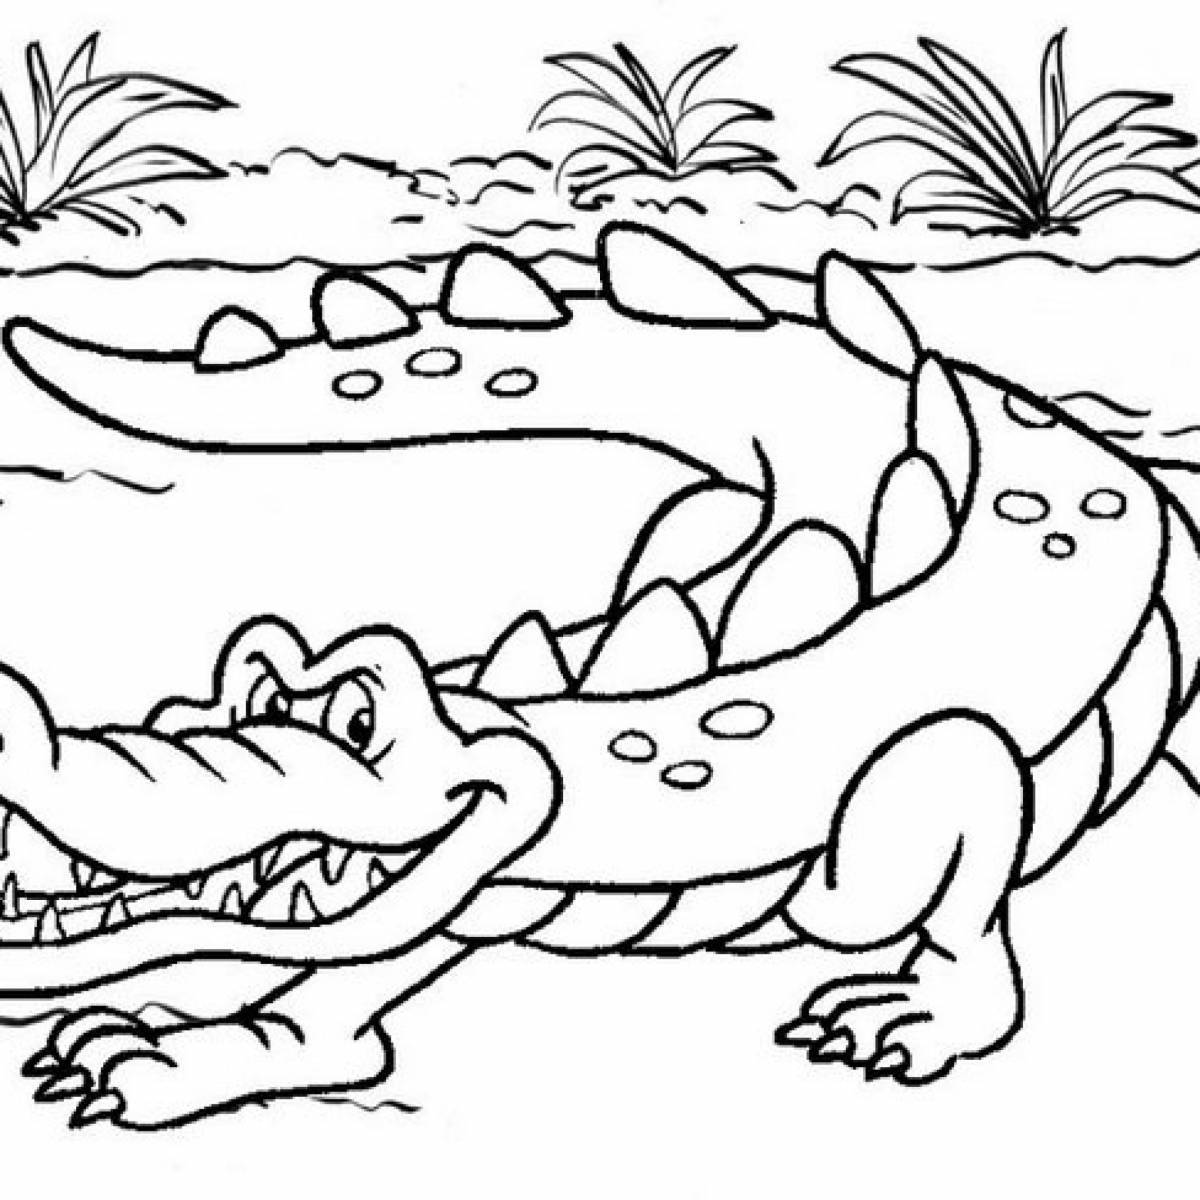 Fun coloring crocodile for kids